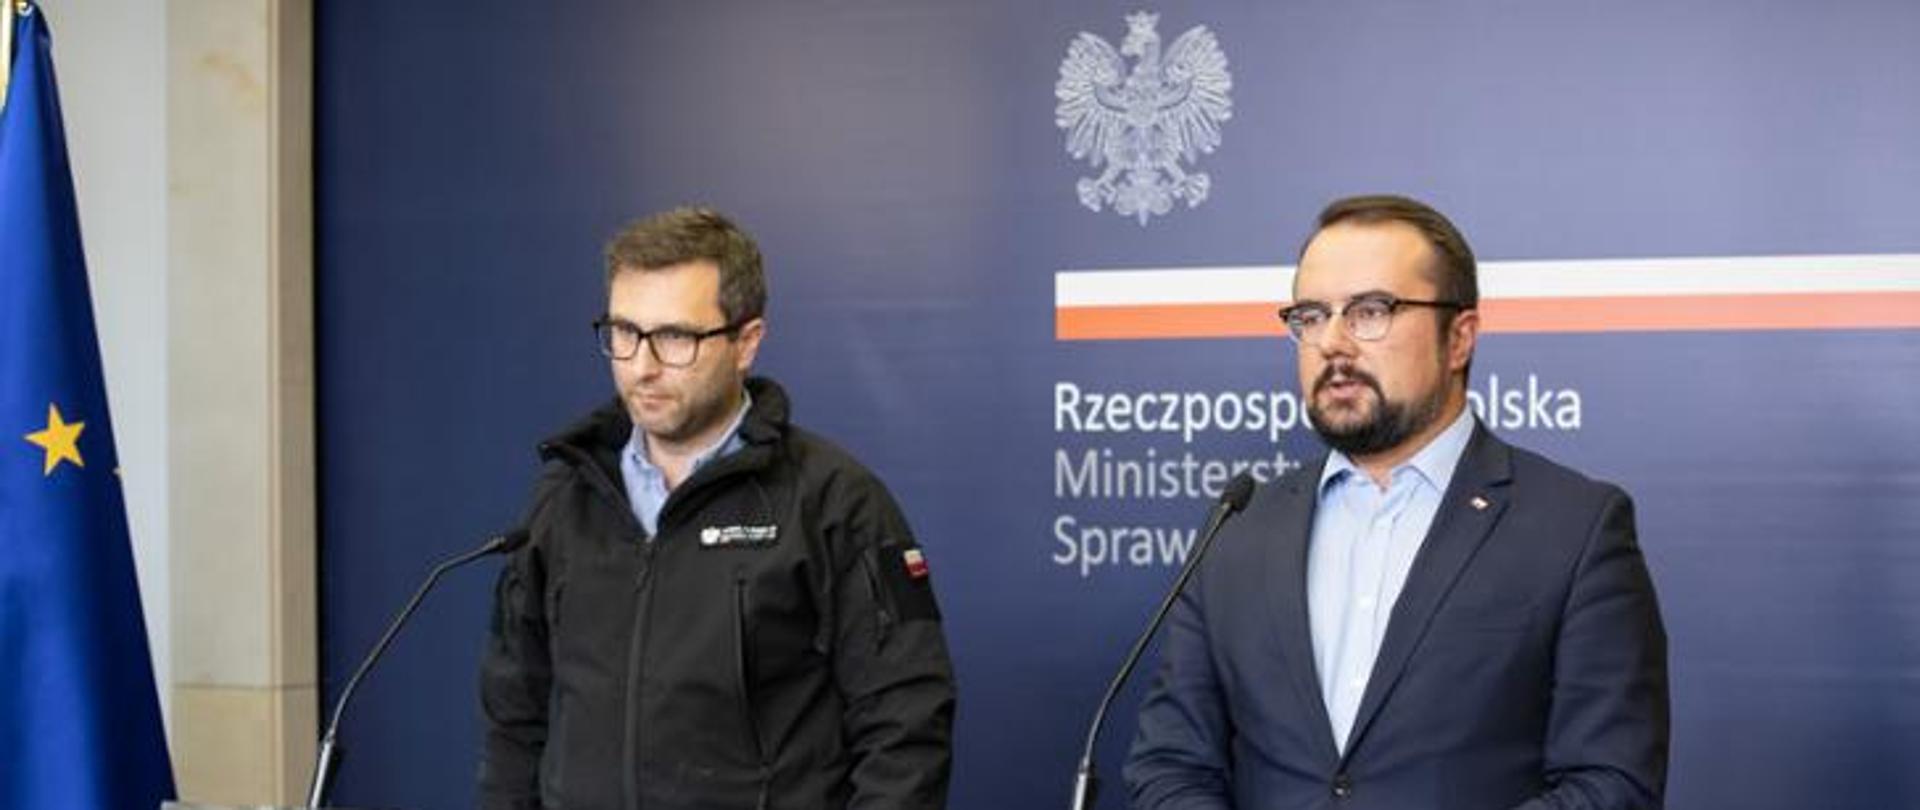 dwóch mężczyzn podczas konferencji prasowej, w tle napis Rzeczpospolita Polska Ministerstwo Spraw Zagranicznych